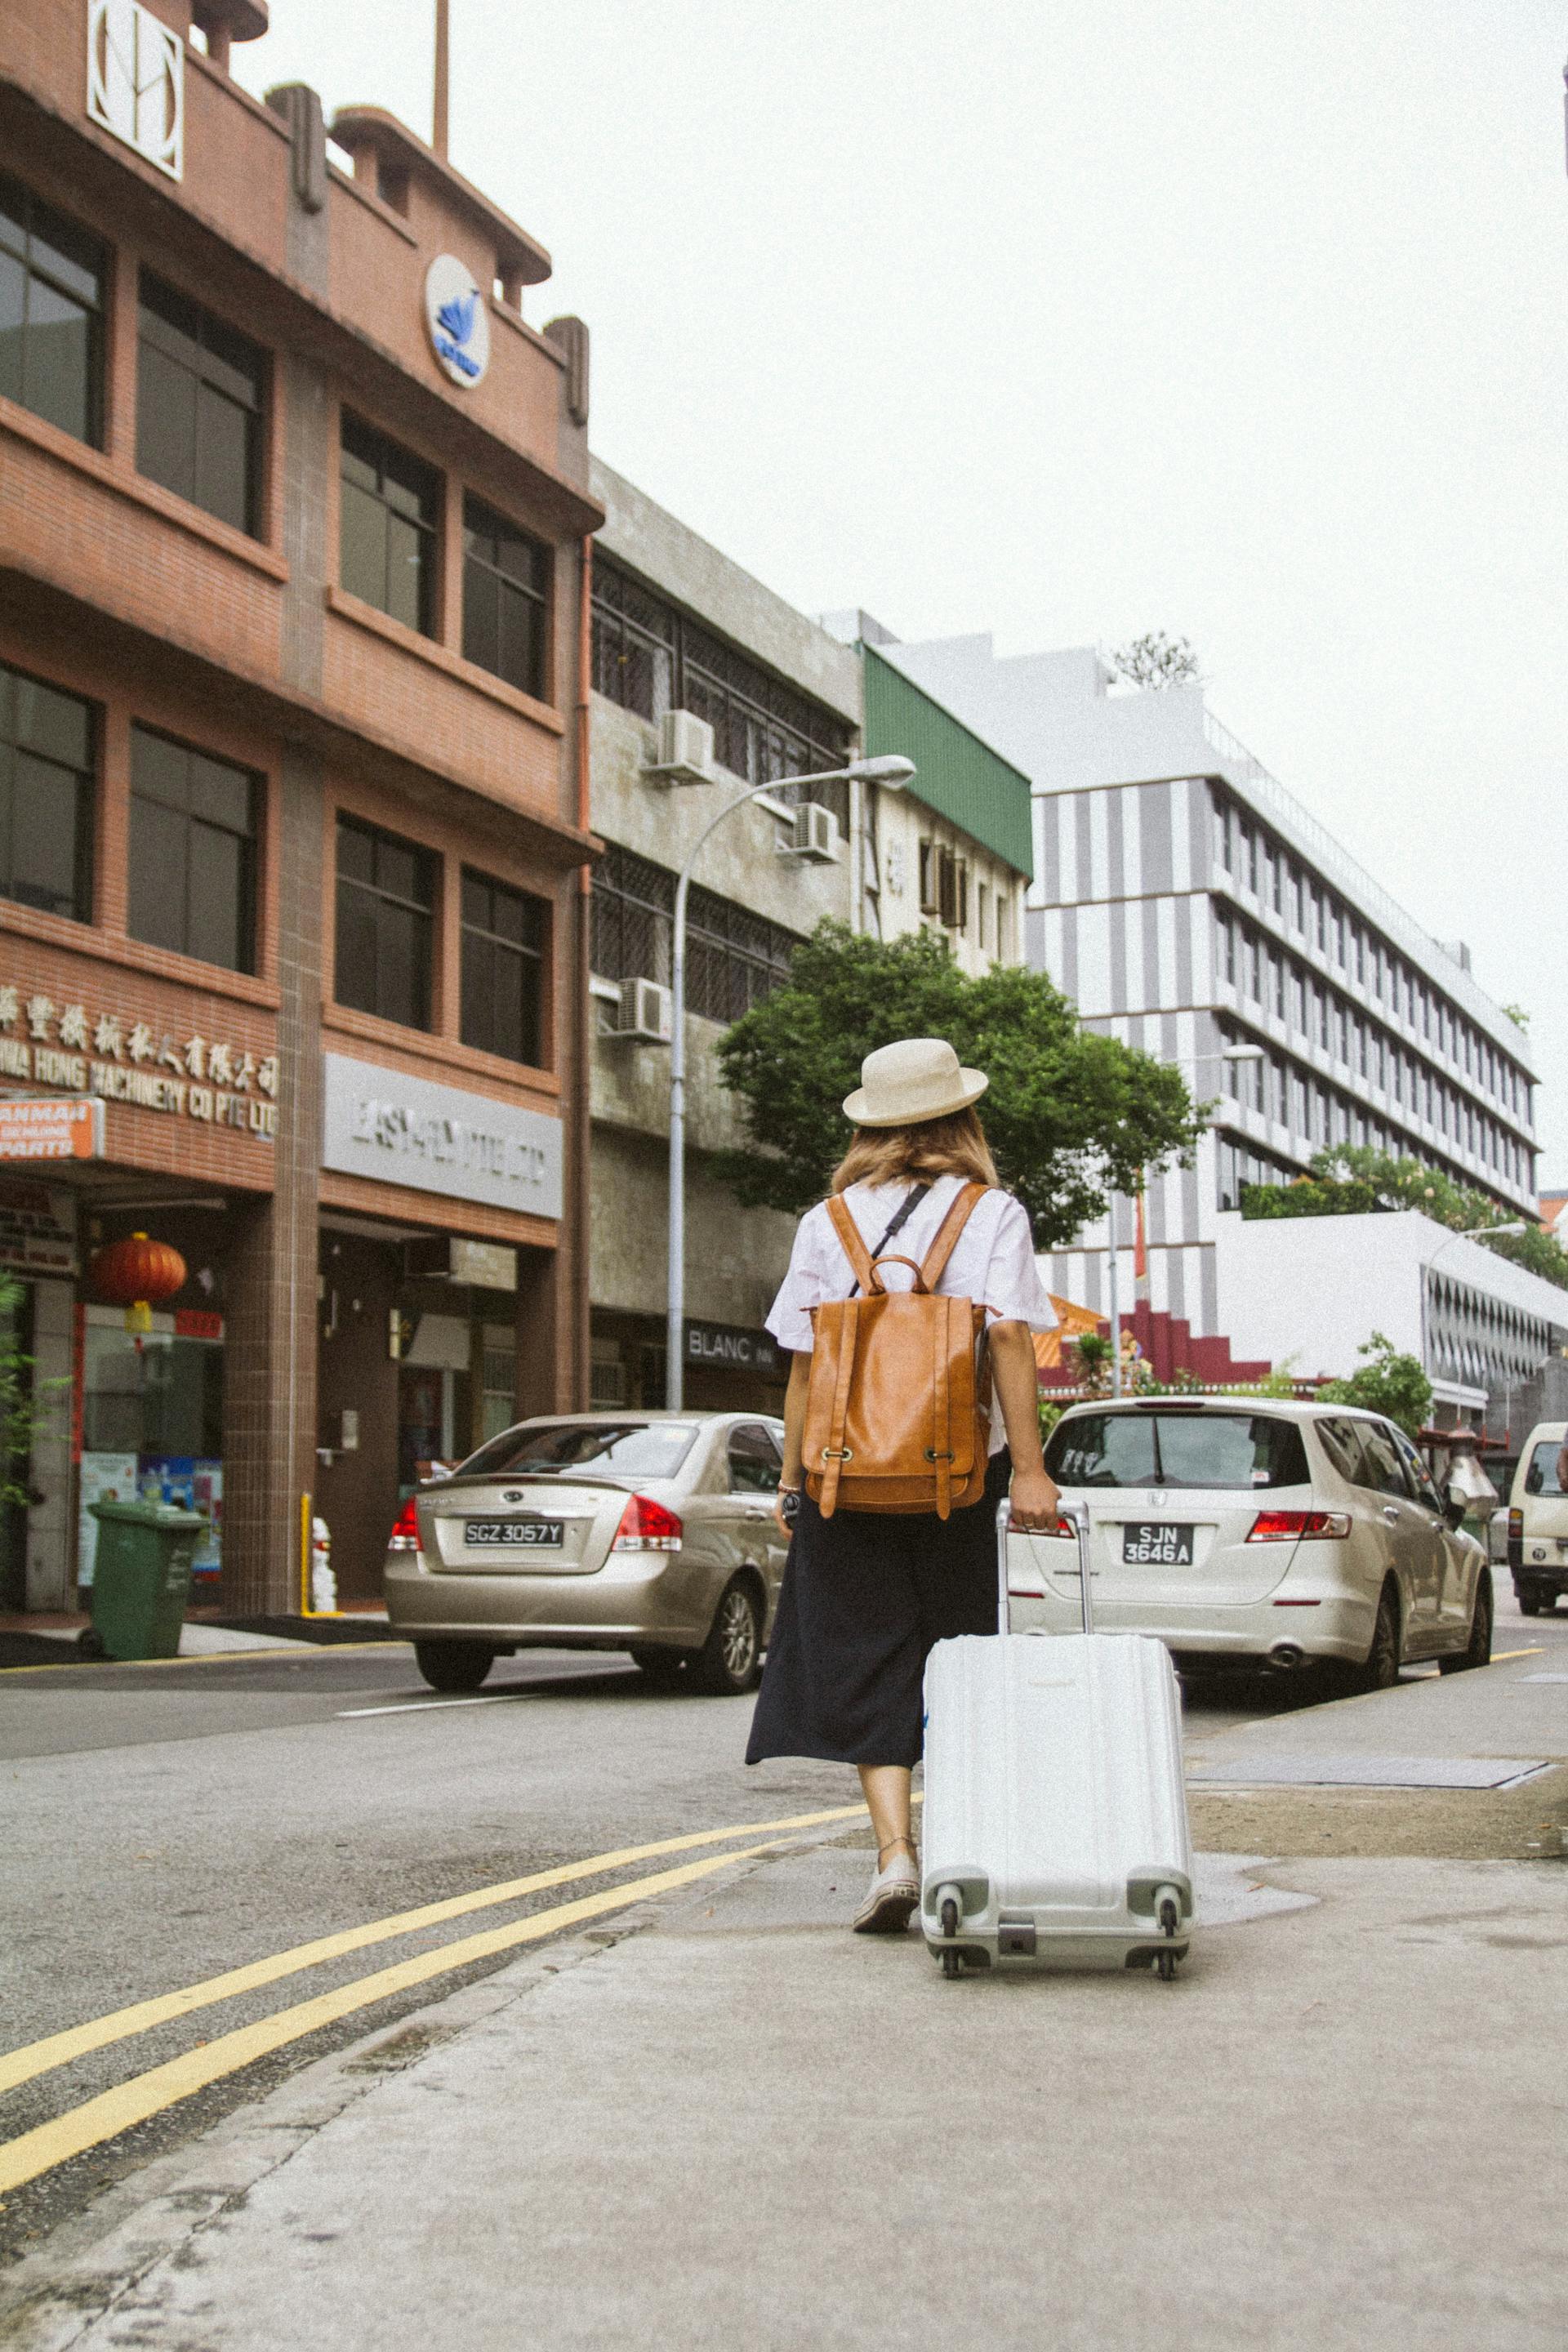 Jeune femme faisant rouler une valise | Source : Pexels